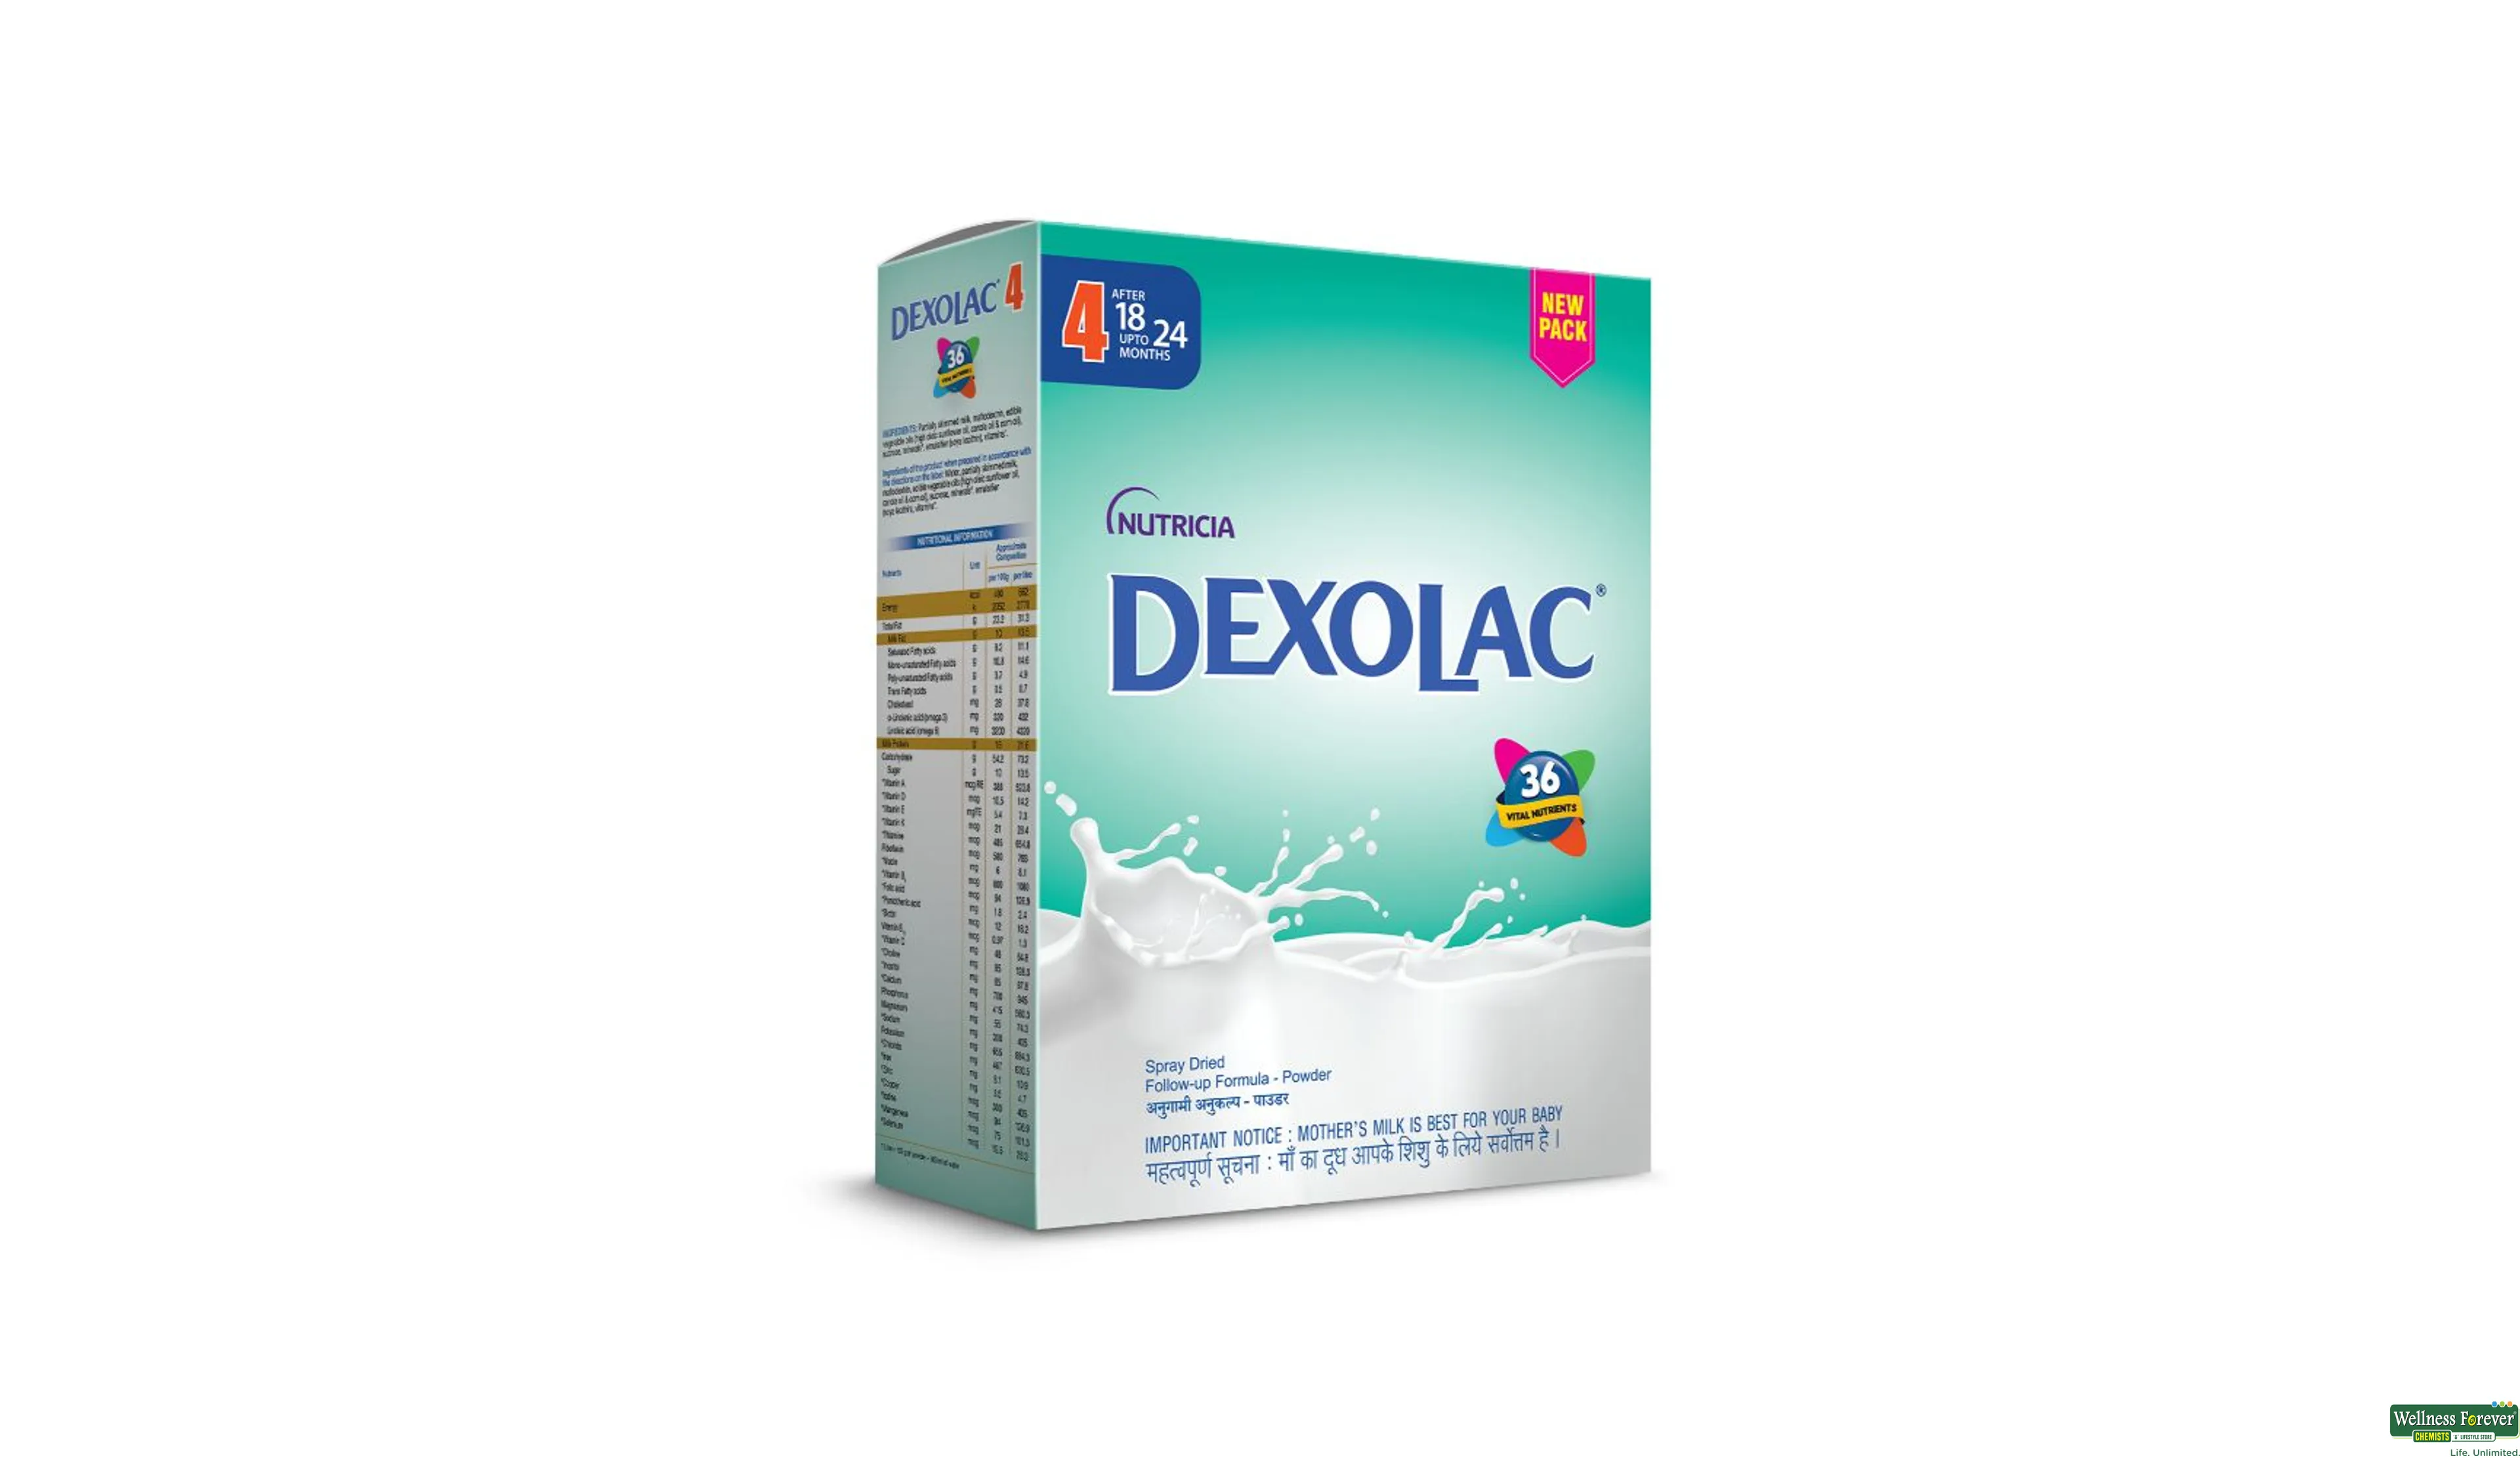 DEXOLAC-4 POW 400GM- 1, 400GM, 